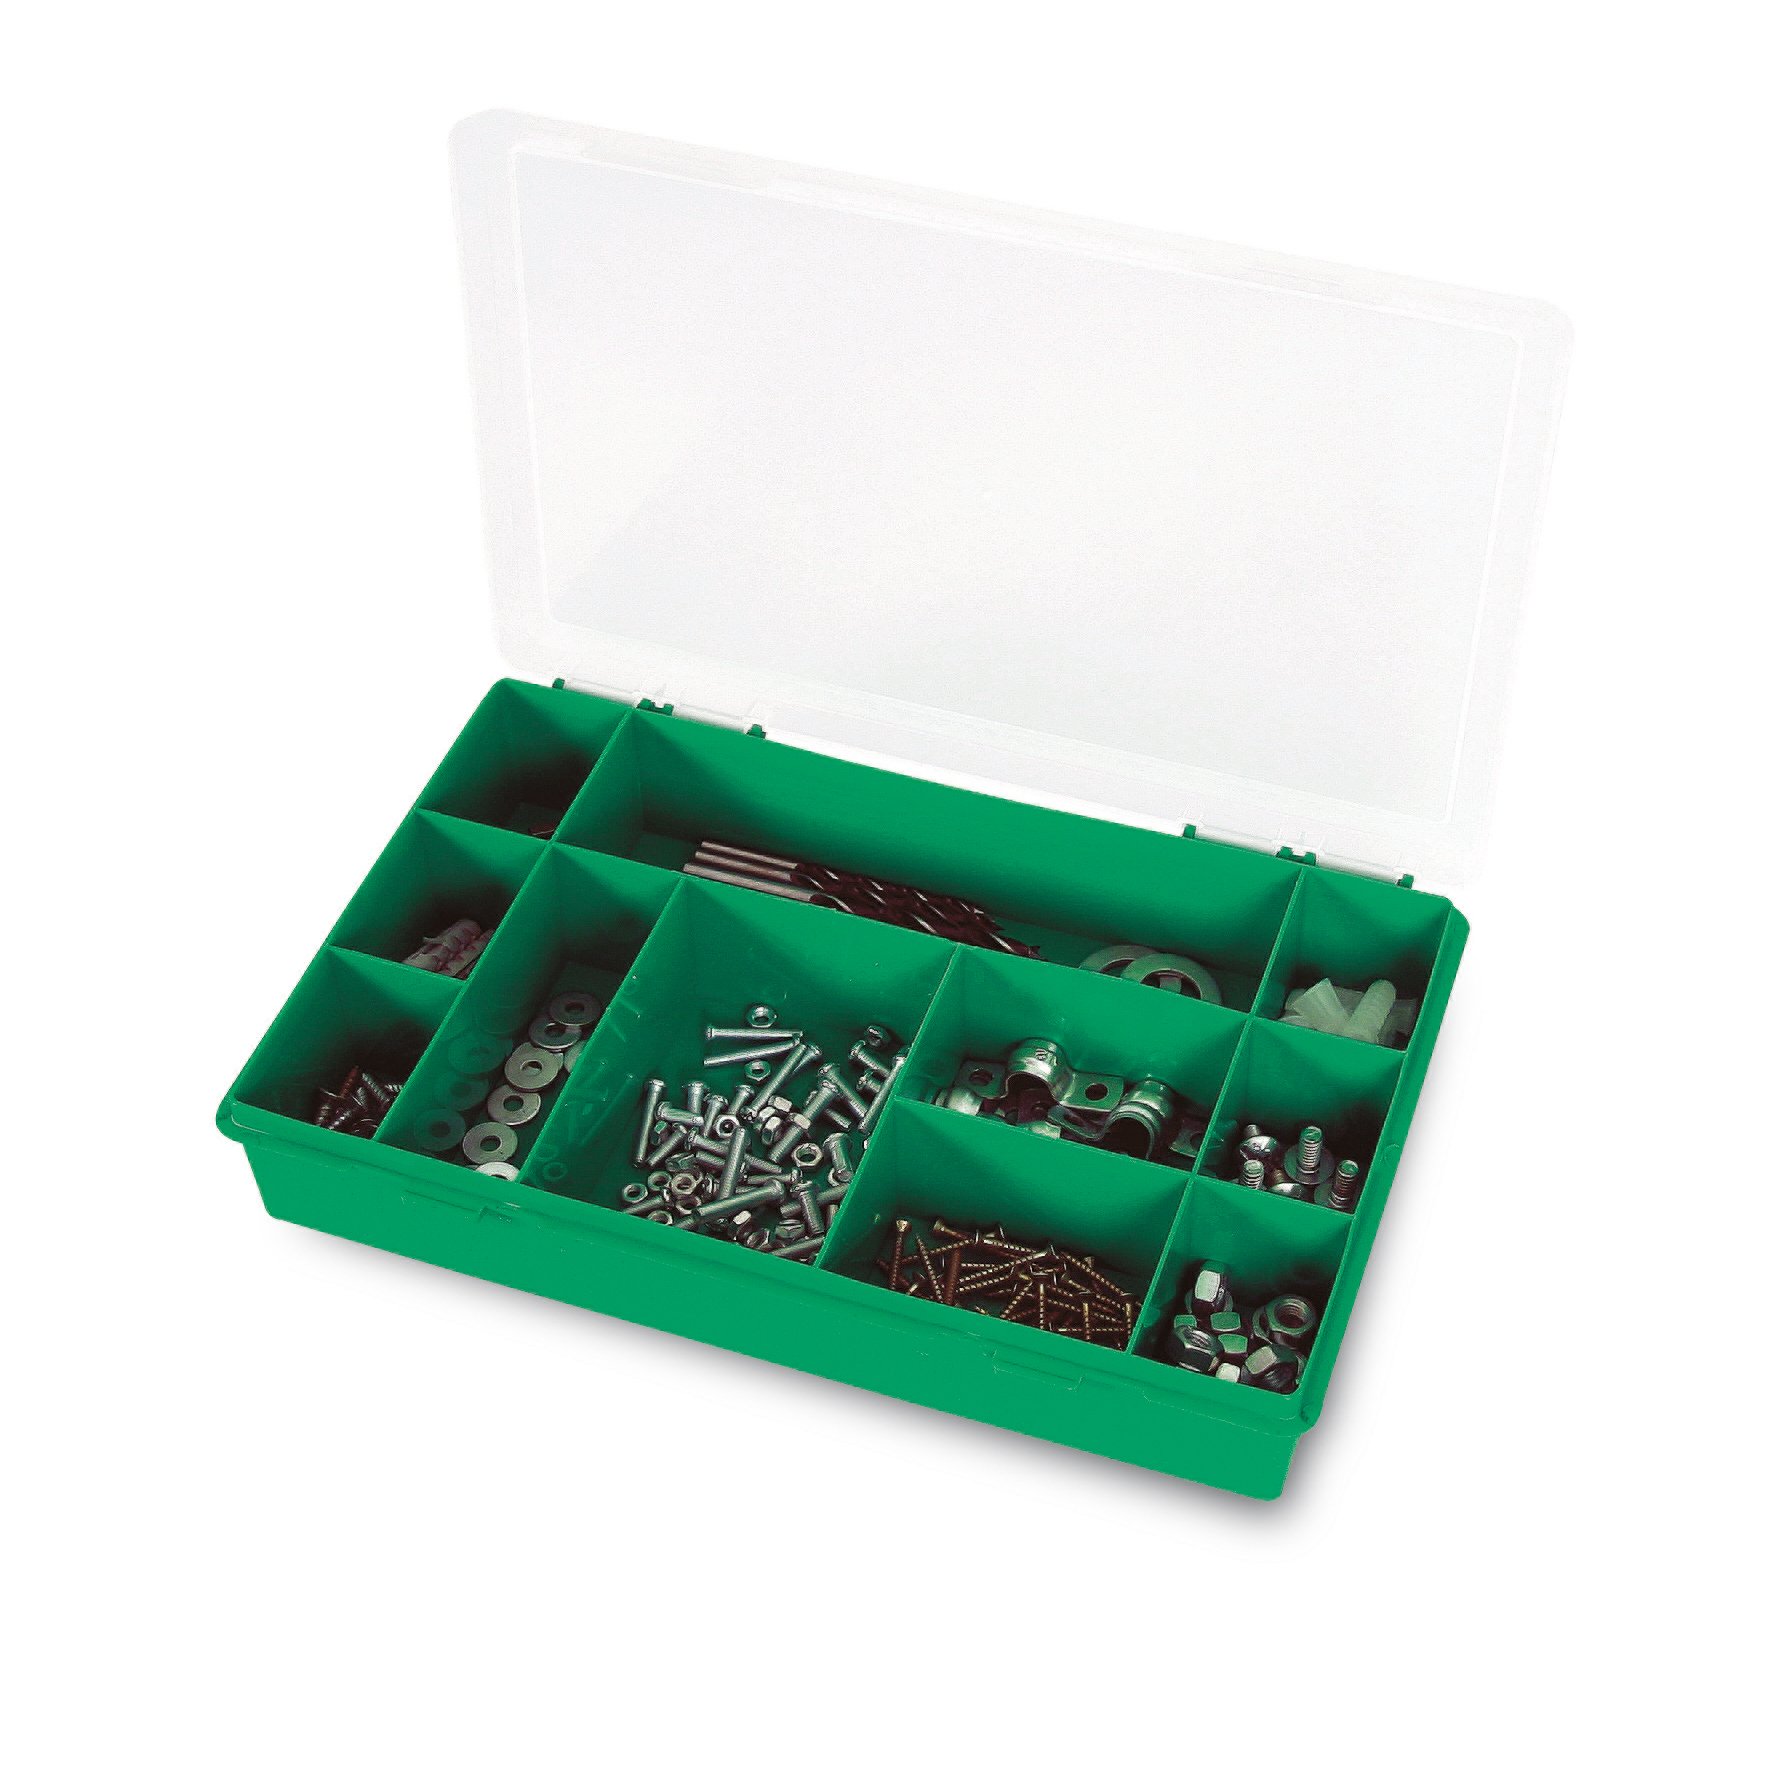 Органайзер Tayg Box 12-11 Estuche, для зберігання дрібних предметів, 29х19,5х5,4 см, зелений (061103) - фото 2